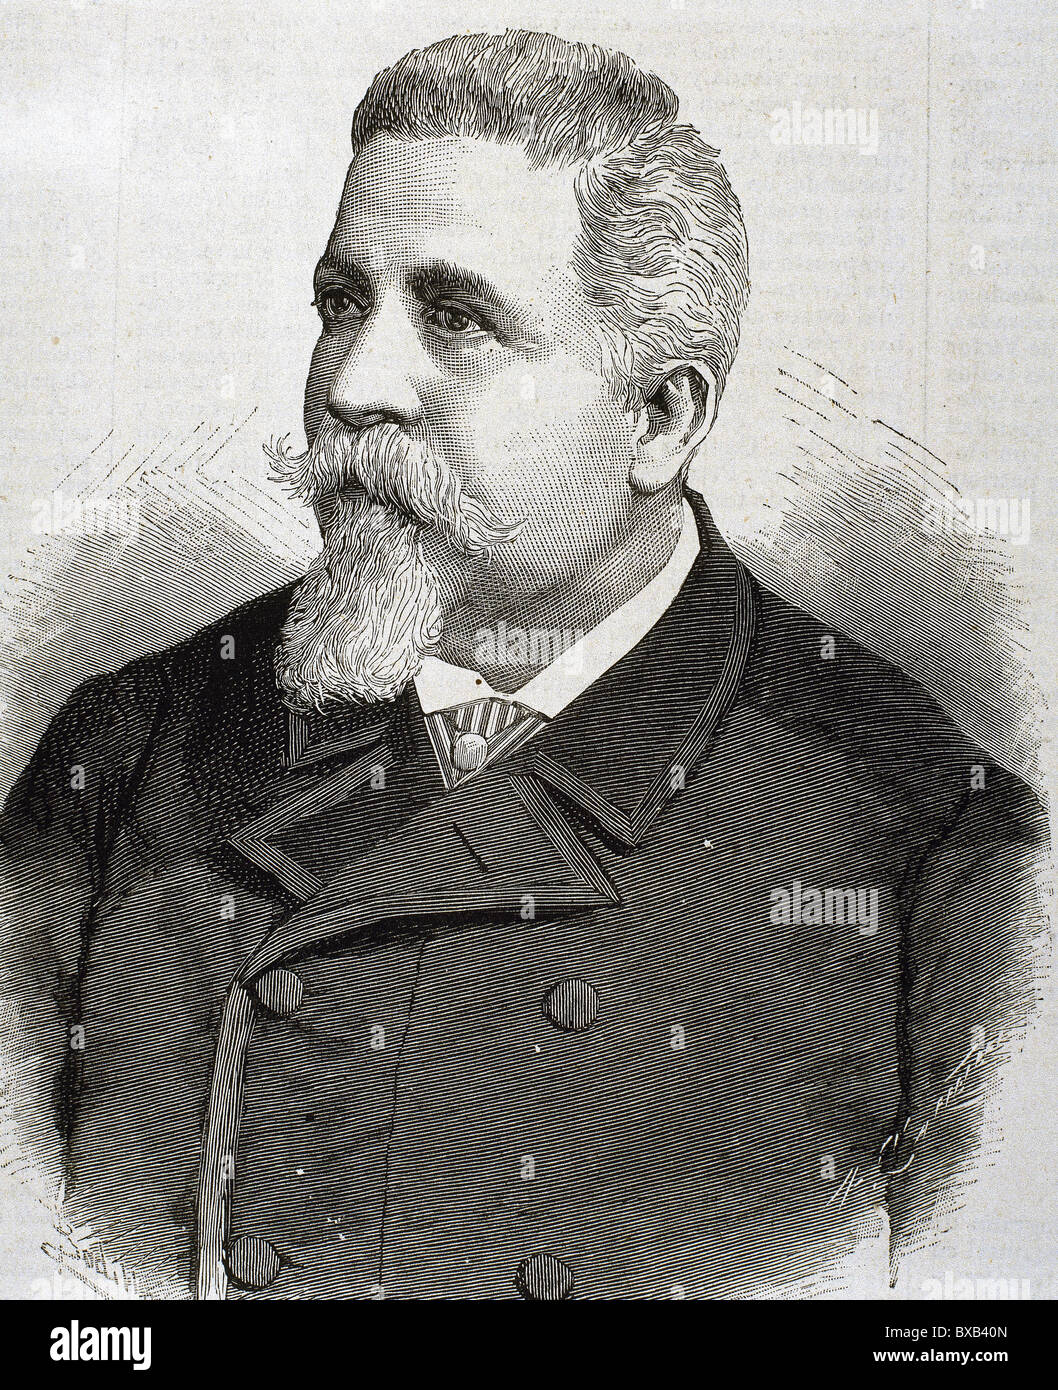 CAIROLI, Benedetto (Pavia, 1825, Capodimonte, 1889). Italian politician. Engraving by Carretero. Stock Photo